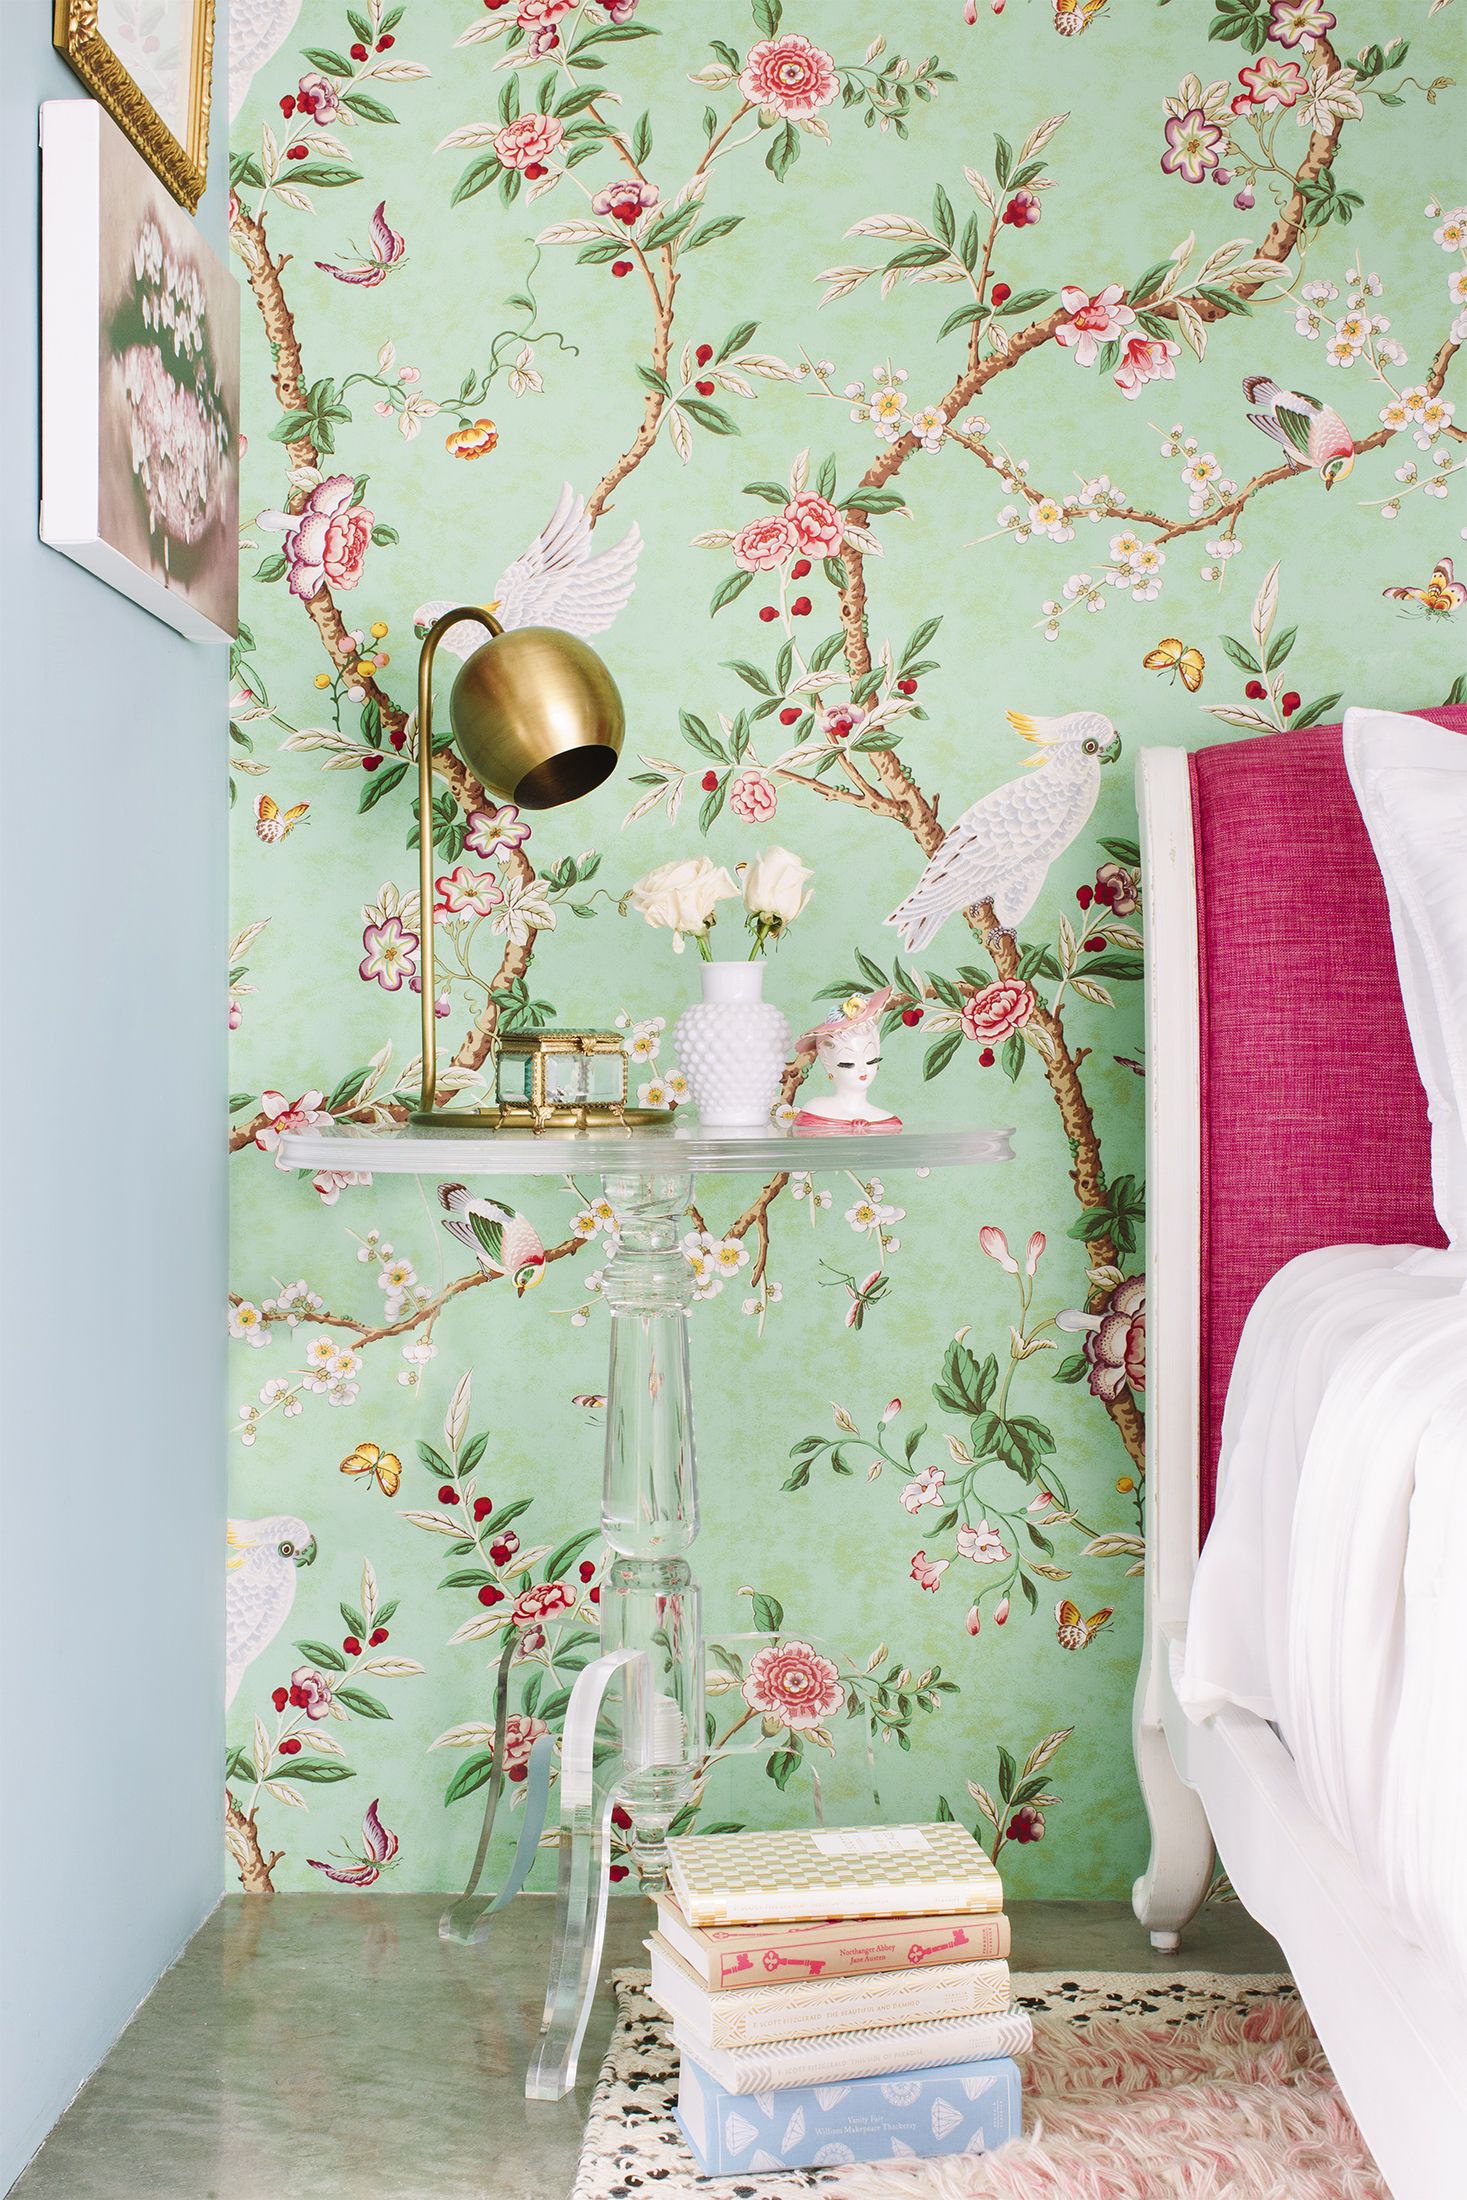 あなたの部屋を春らしくする26のデコレーションアイディア Elle Decor エル デコ